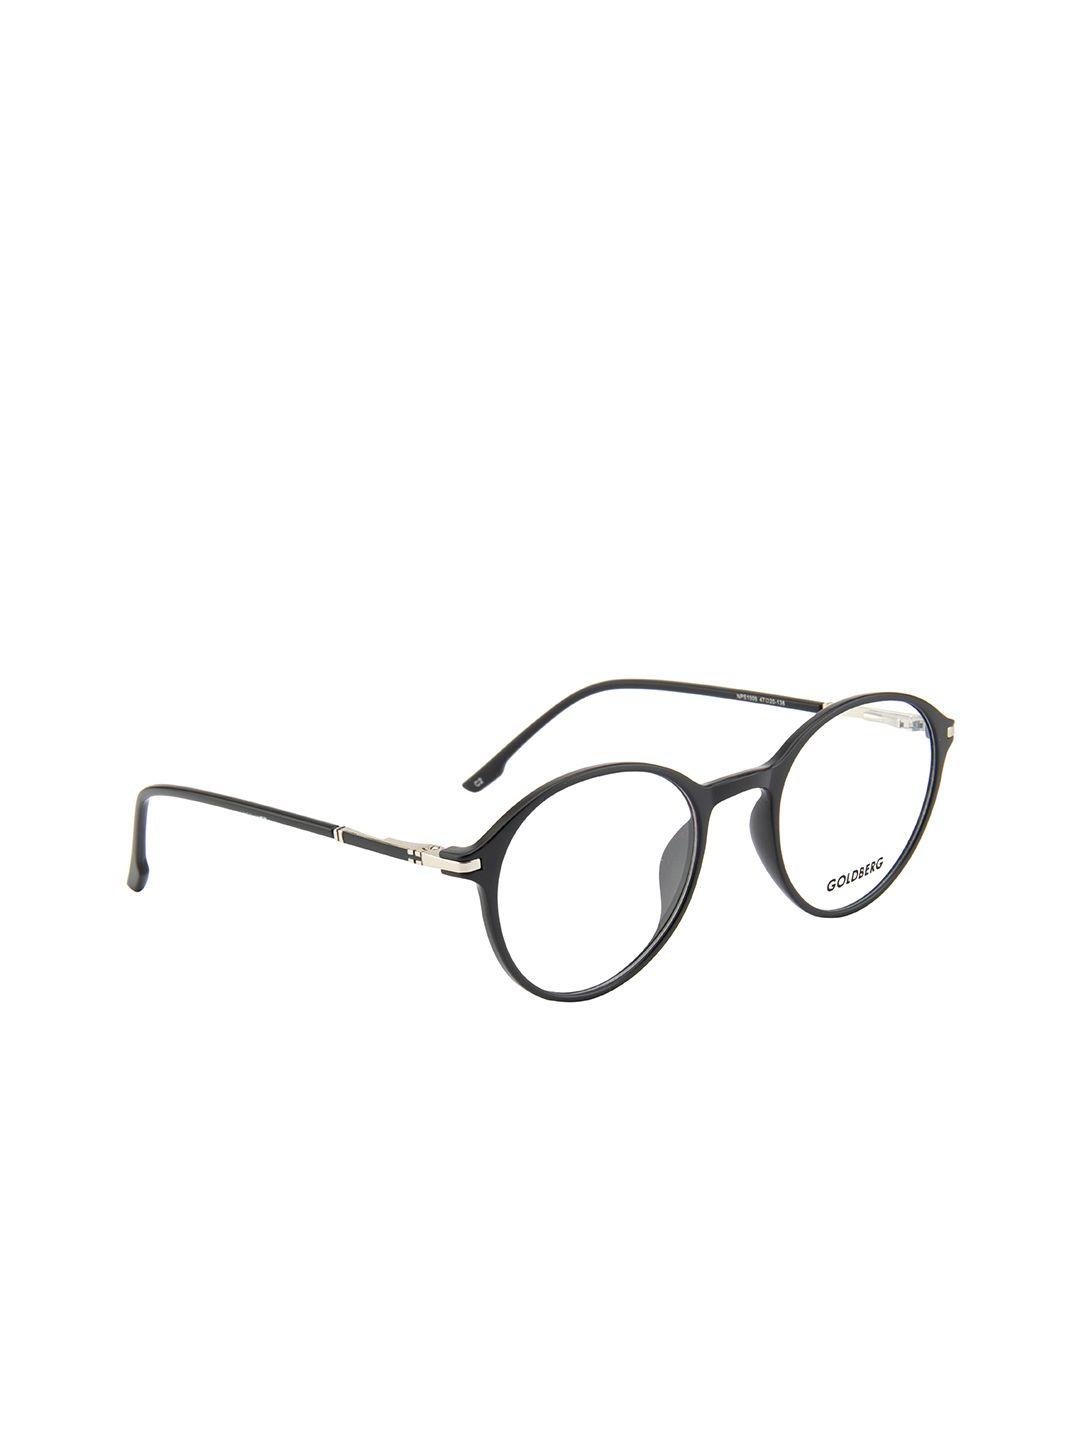 gold berg unisex black full rim round frames eyeglasses